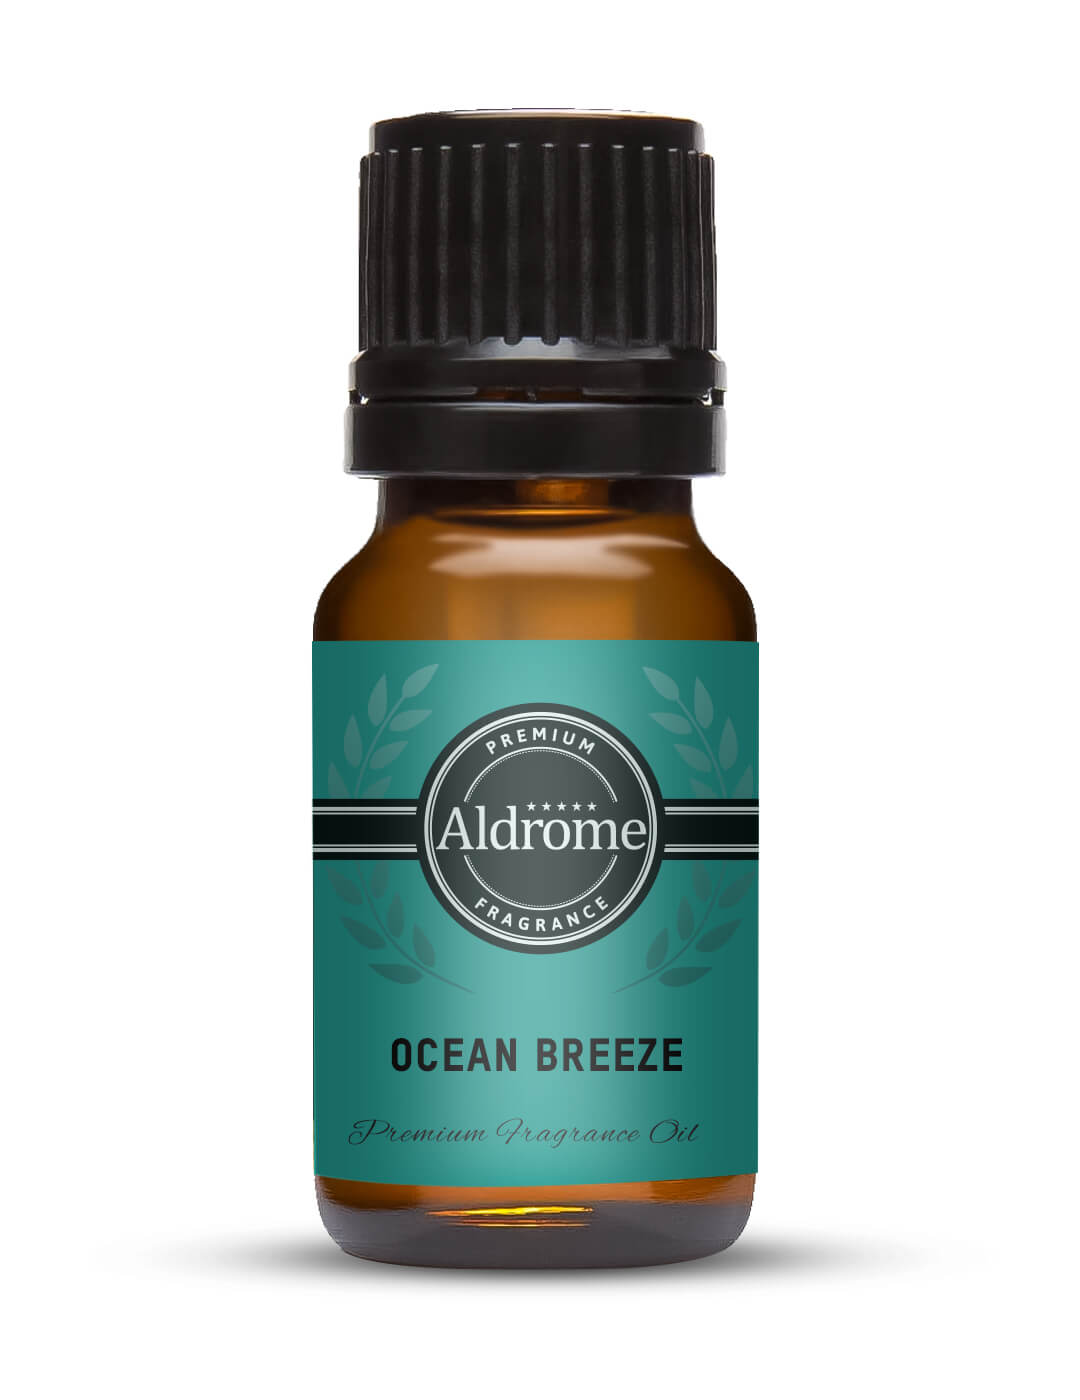 Ocean Breeze Fragrance Oil - 10ml | Buy Ocean Breeze Fragrance Oil | Aldrome Premium Fragrance Oil